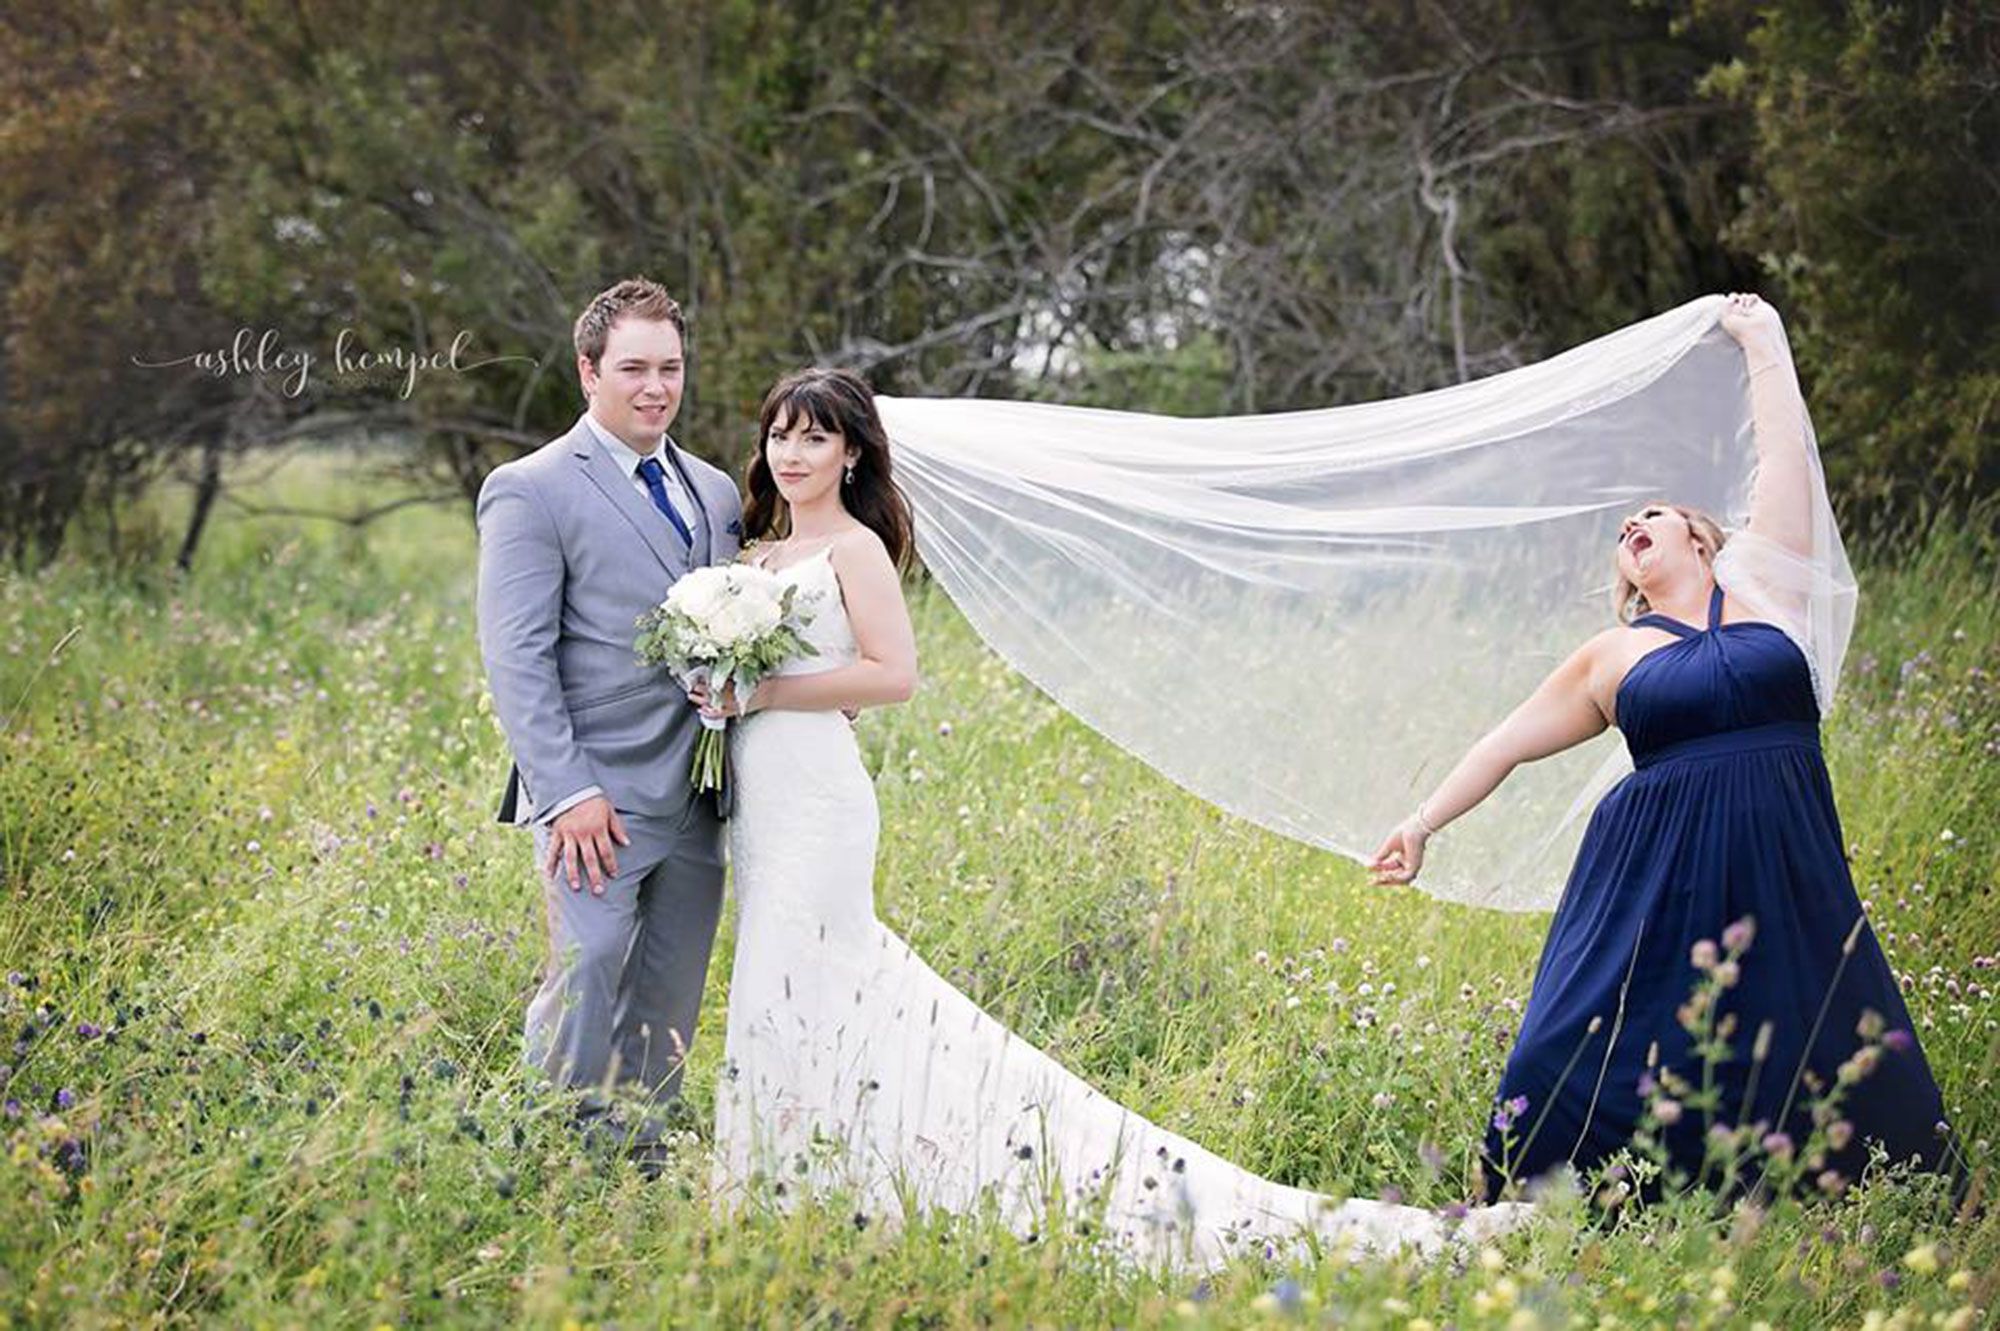 Read These Top Tips for Family Wedding Photos | Colorado Weddings